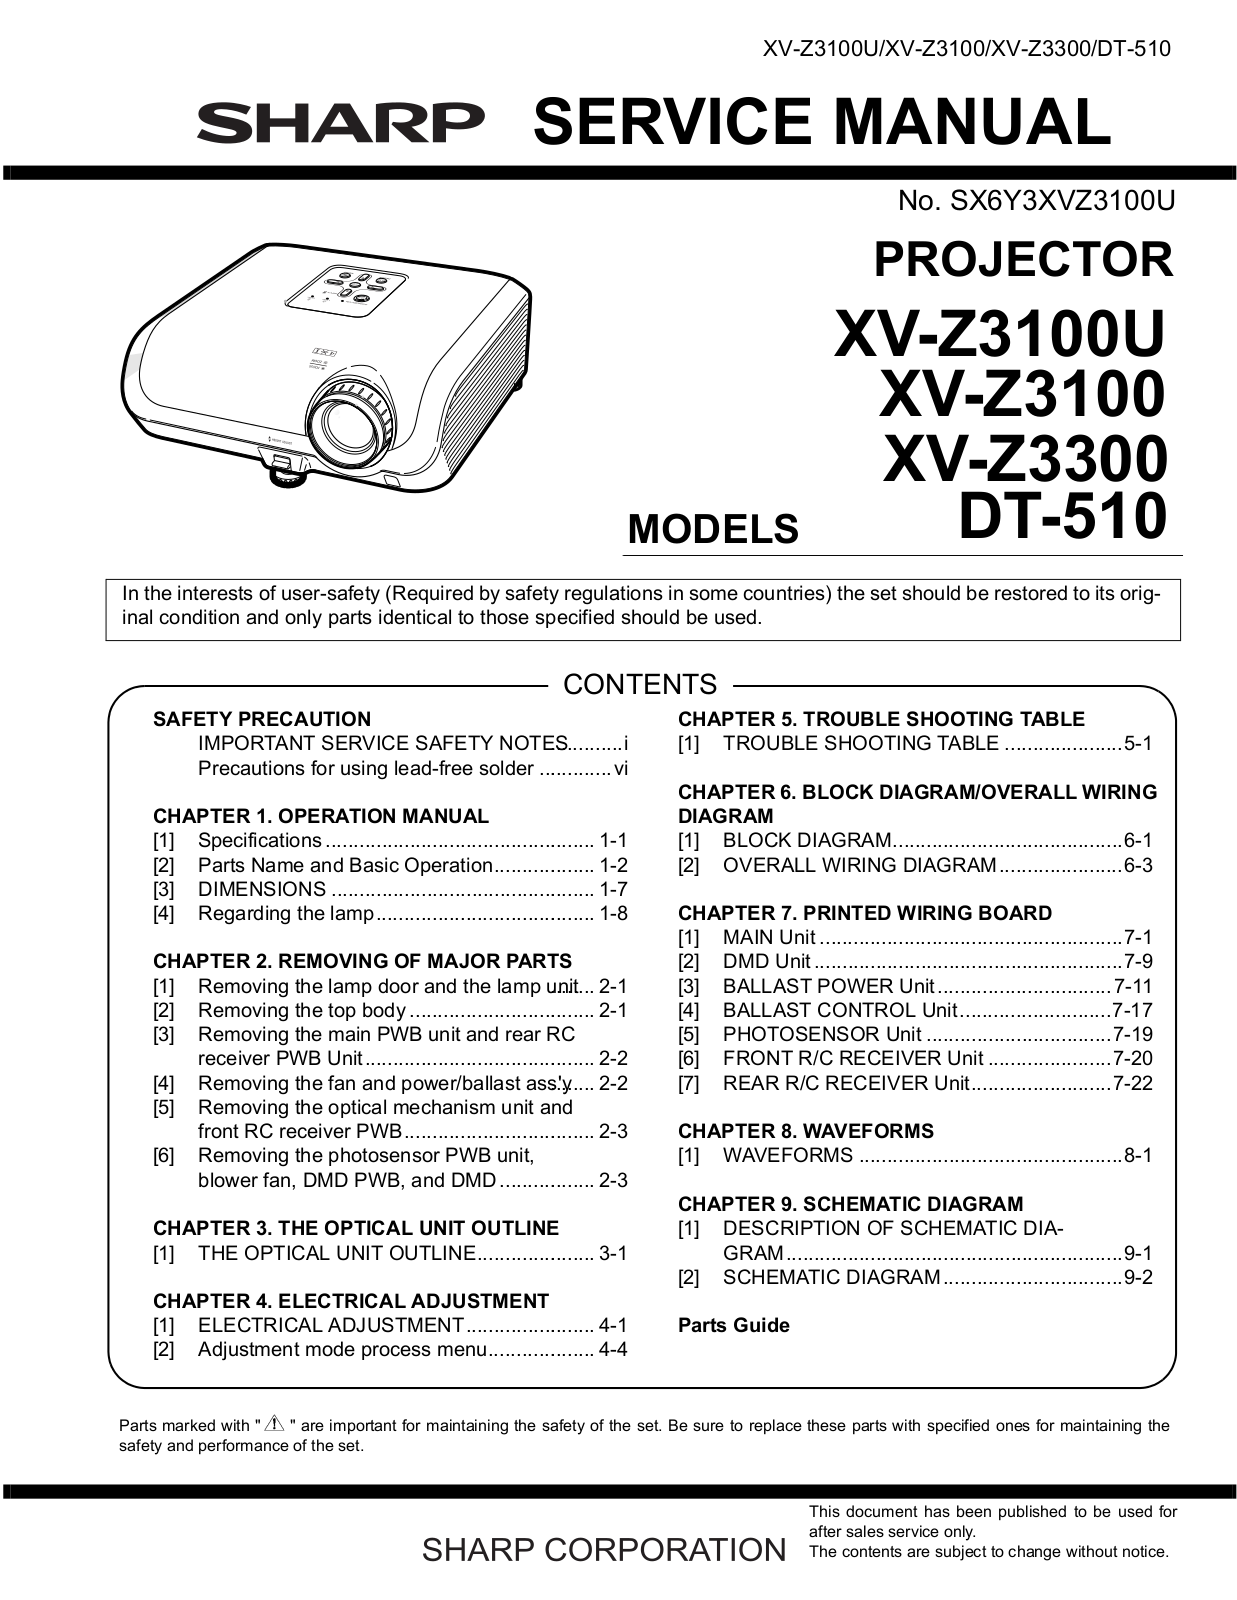 Sharp XV-Z3100U, XV-Z3100, XV-Z3300, DT-510 Service Manual